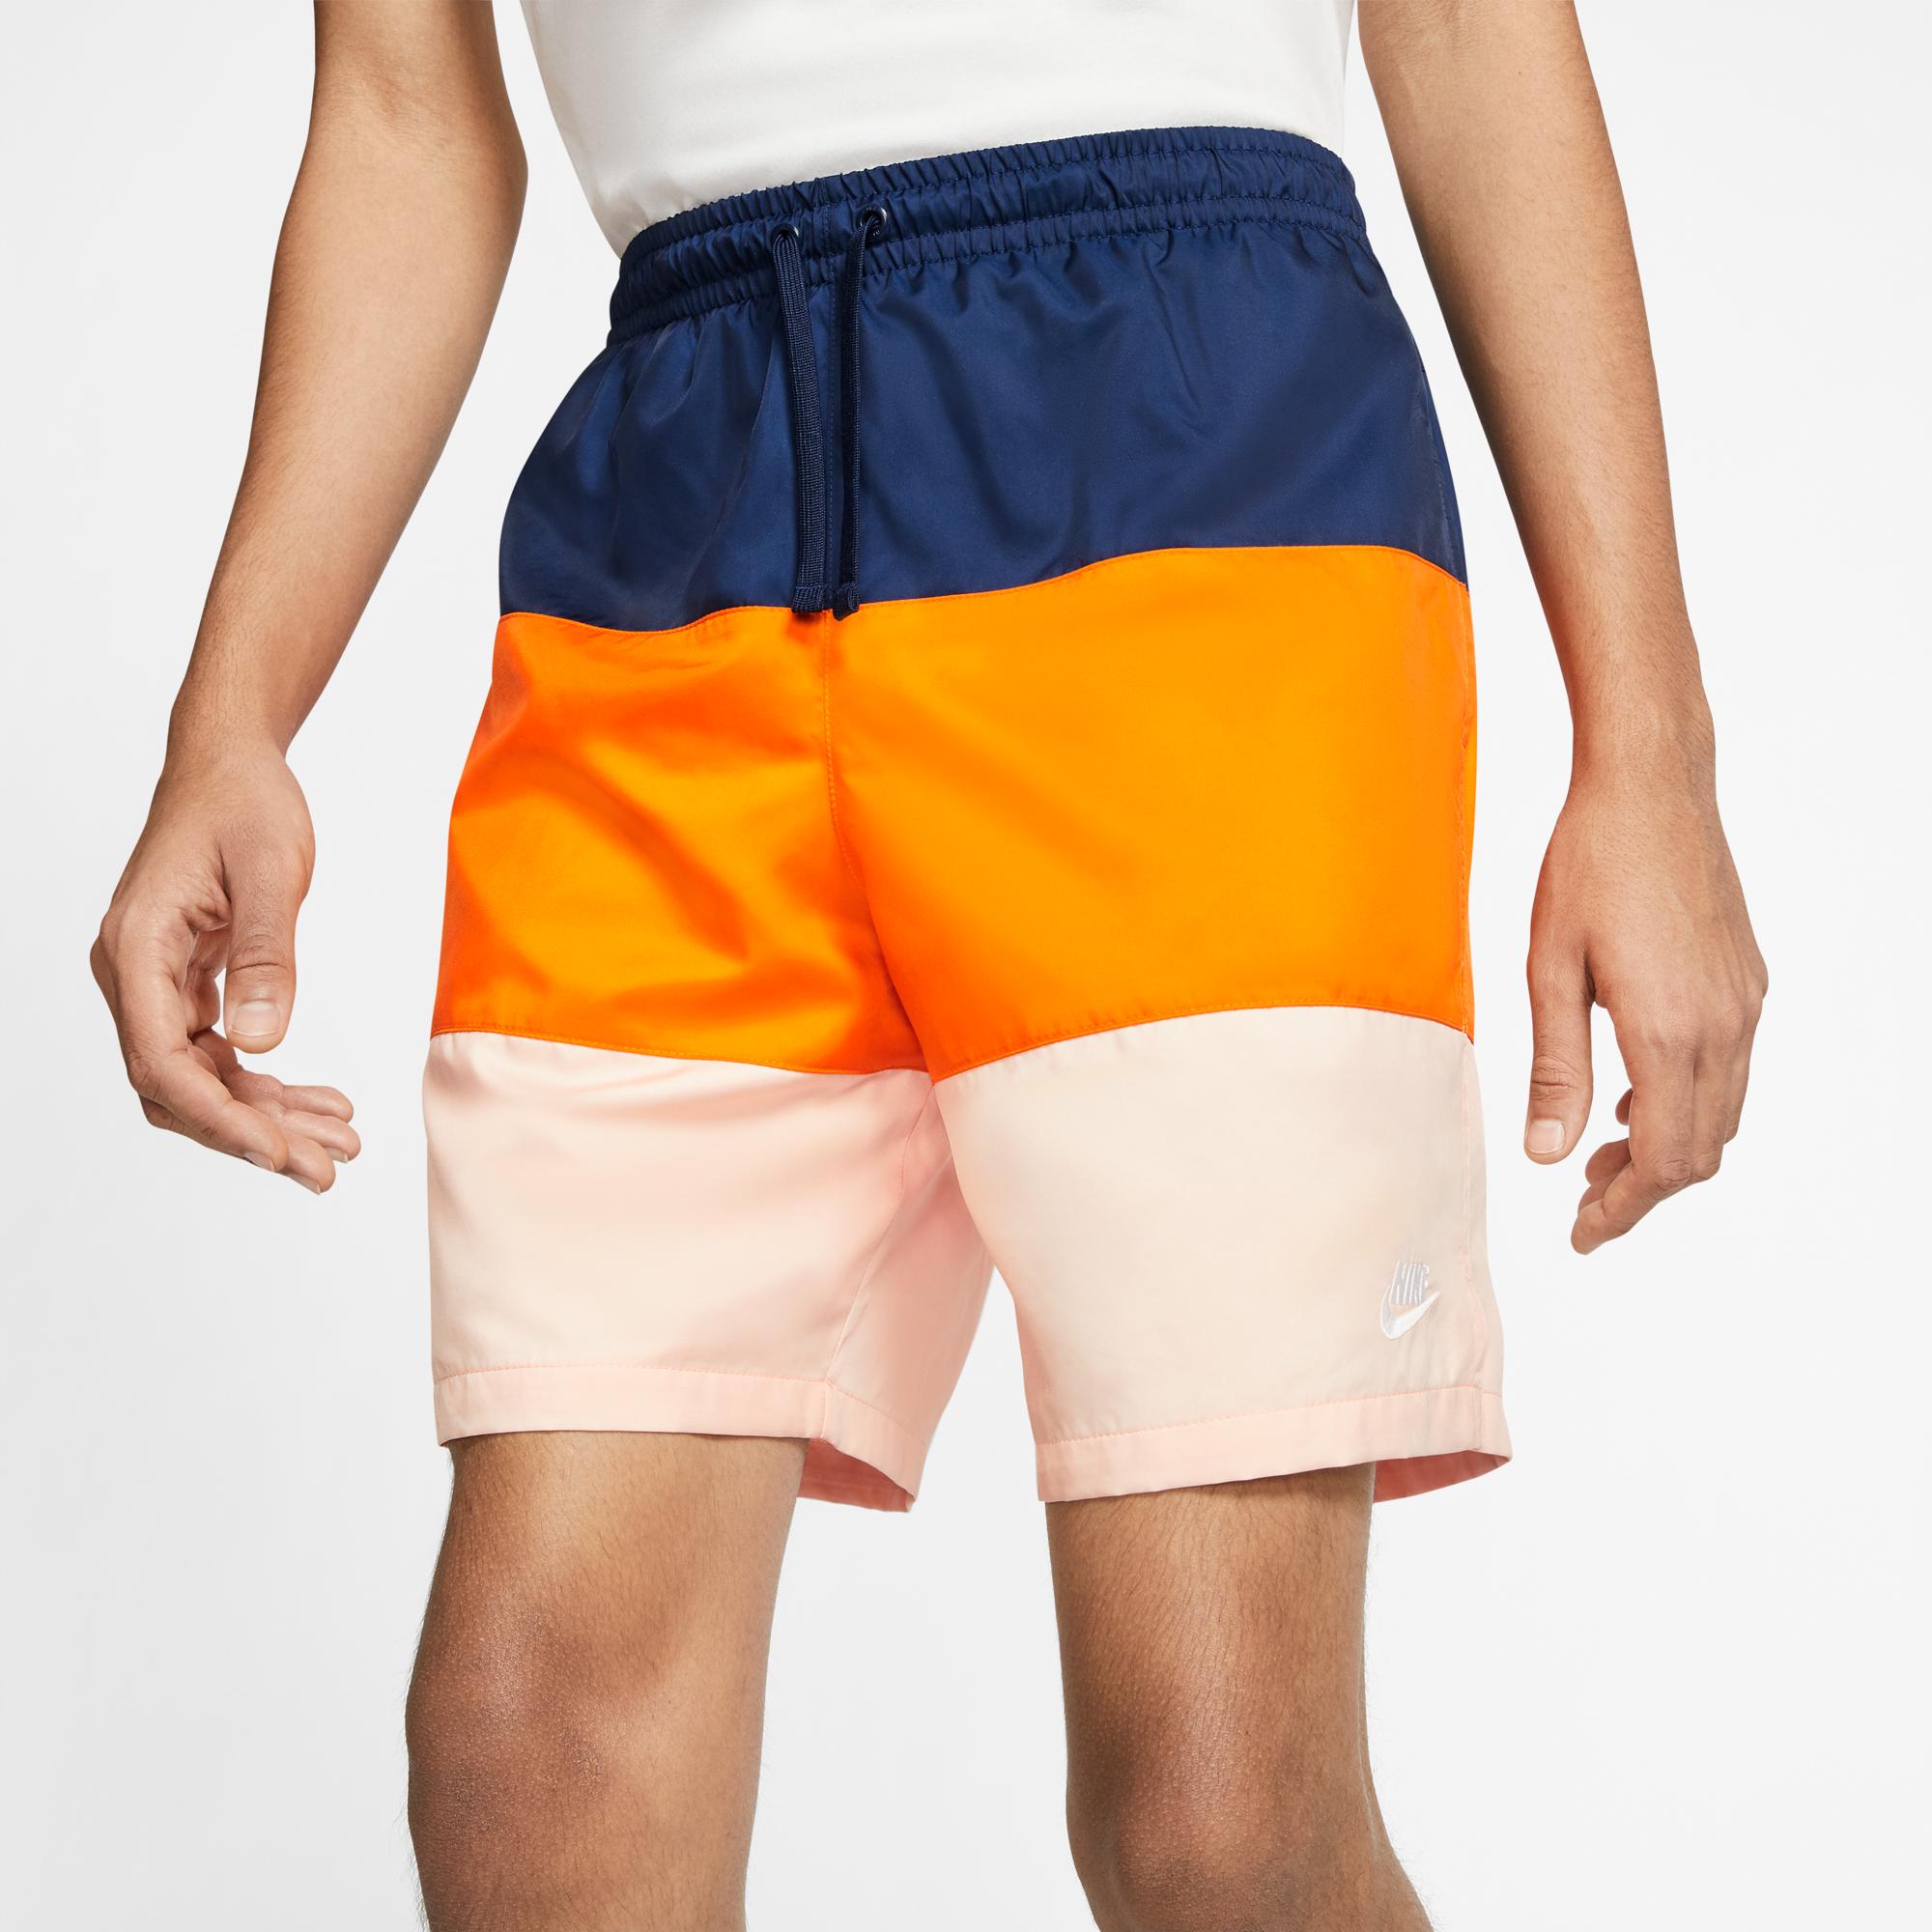 Short edition. Шорты Nike Orange. Nike Sportswear shorts Woven. Шорты Nike ACG мужские оранжевые. Шорты найк нейлоновые.